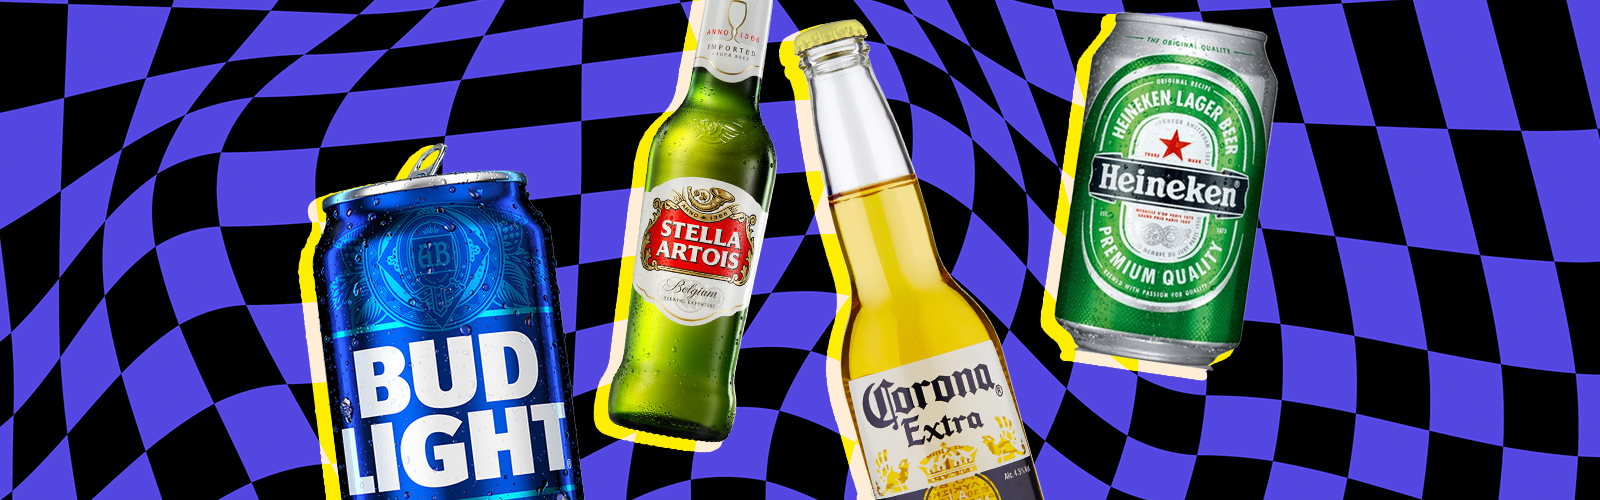 Bud Light/Stella Artois/Corona/Heineken/istock/Uproxx